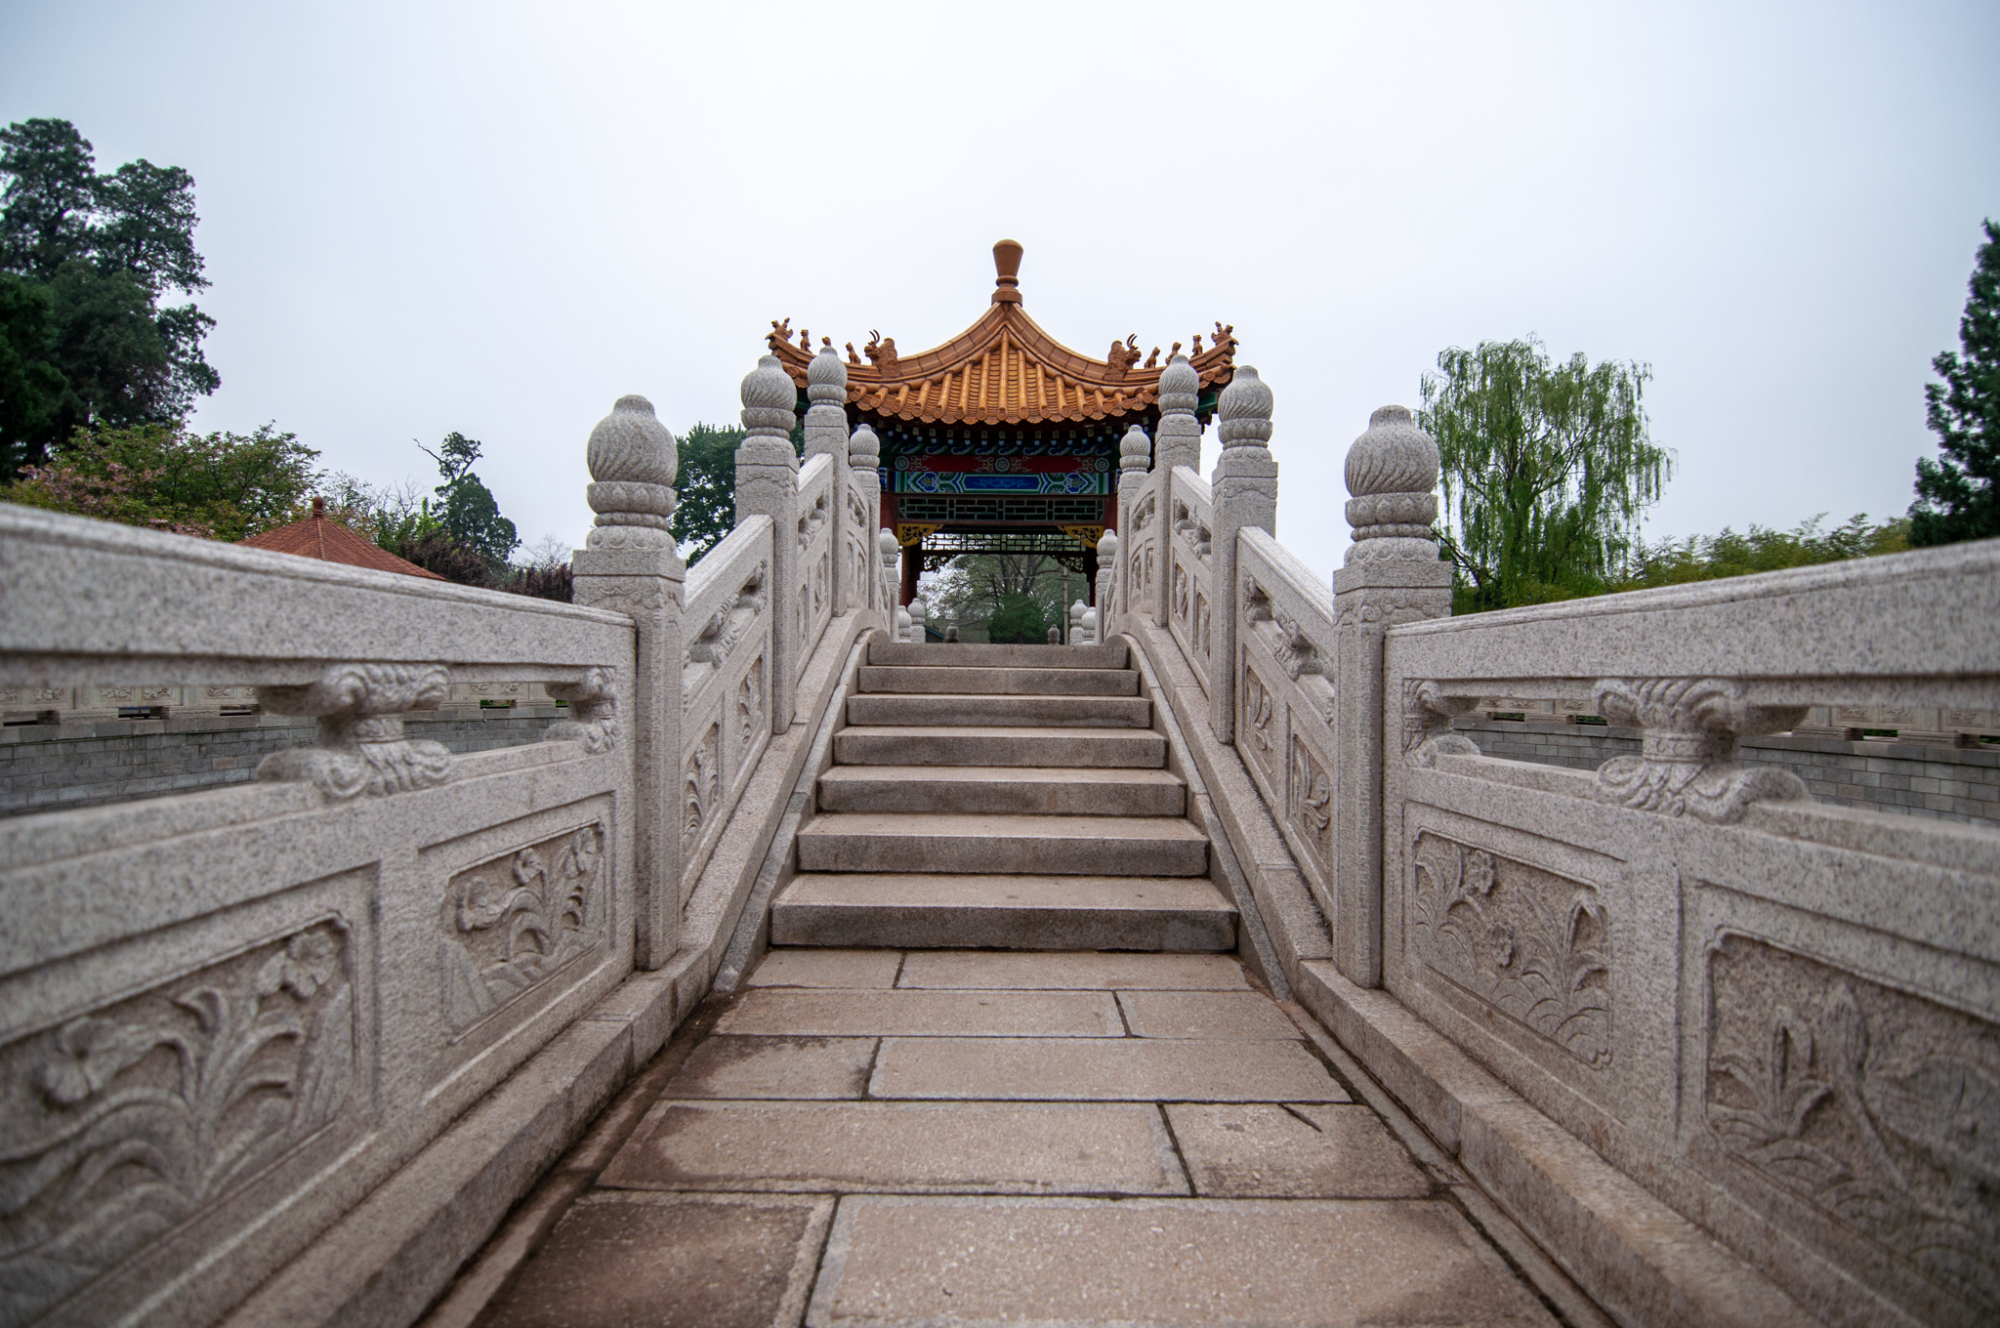 五岳第一庙西岳庙，明清宫殿御苑式建筑群，被誉为“陕西小故宫”